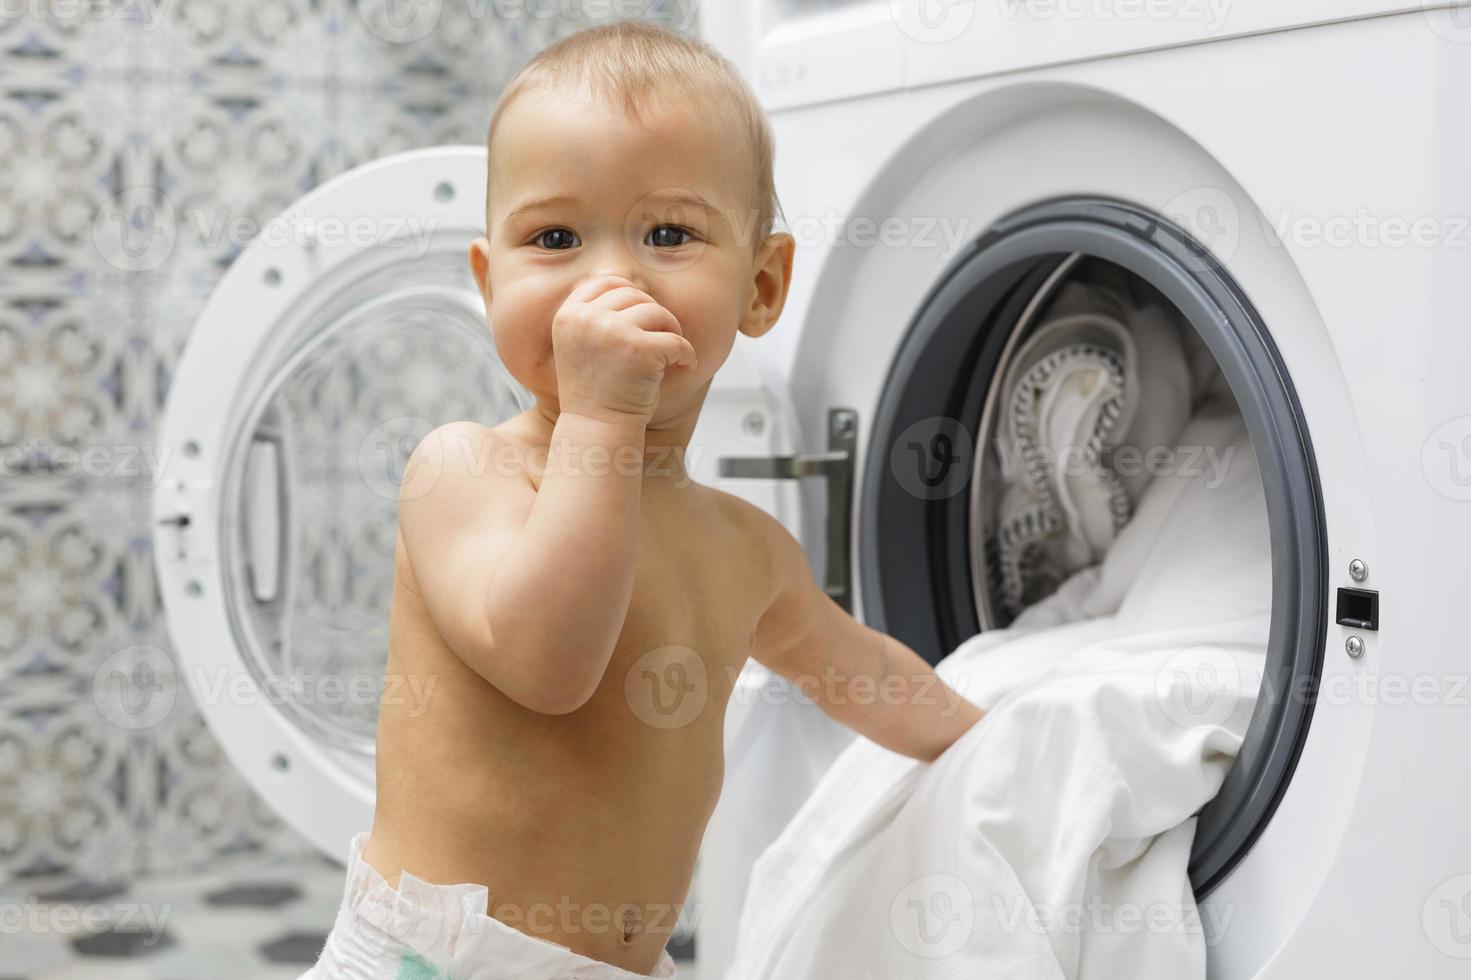 schattig baby jongen naast de het wassen machine foto